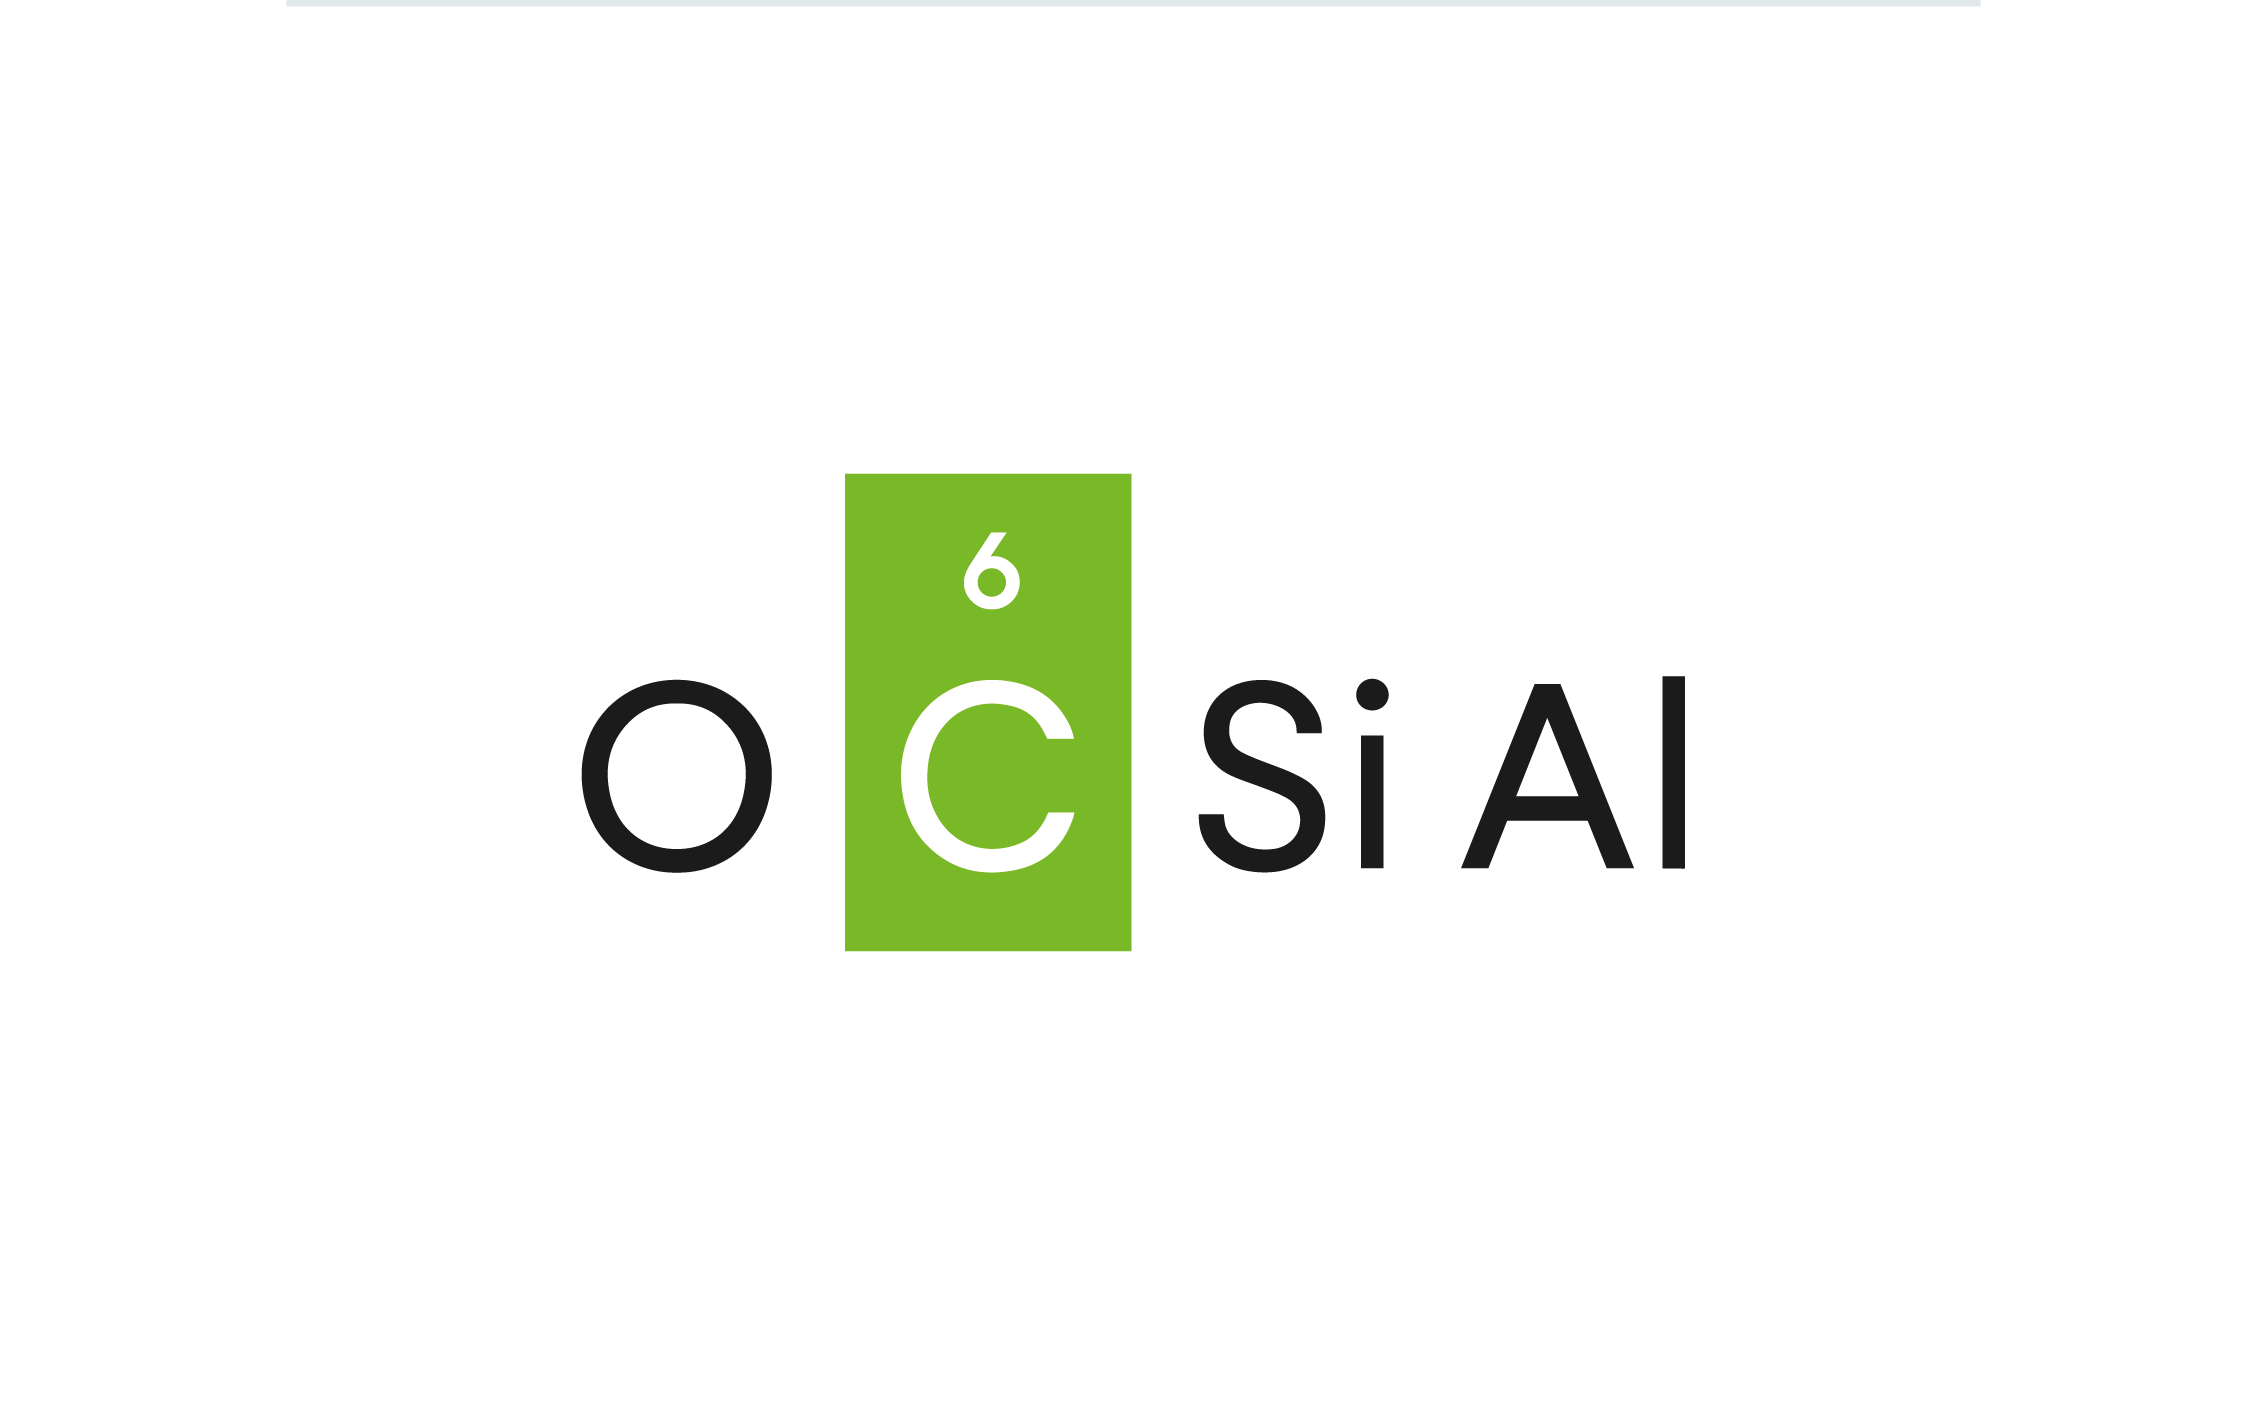 Logo Ocsial